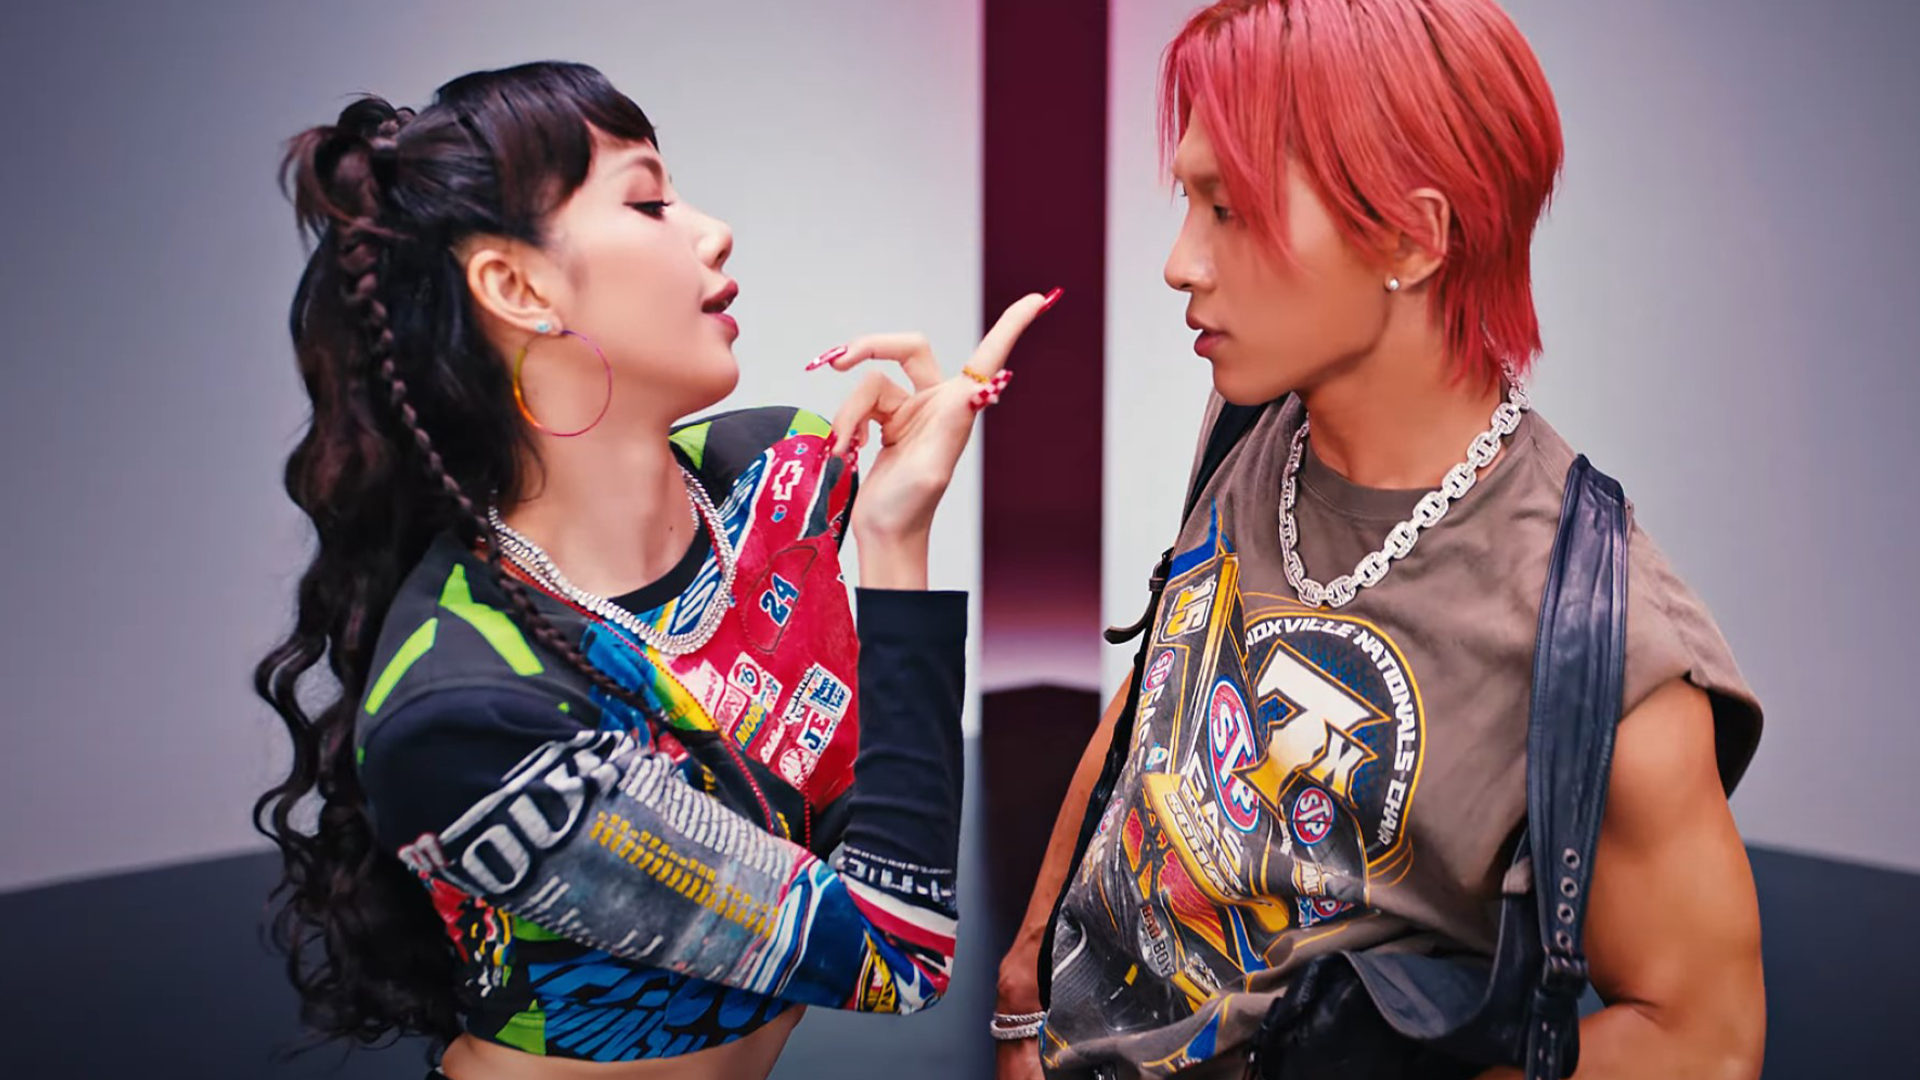 Taeyang and Lisa